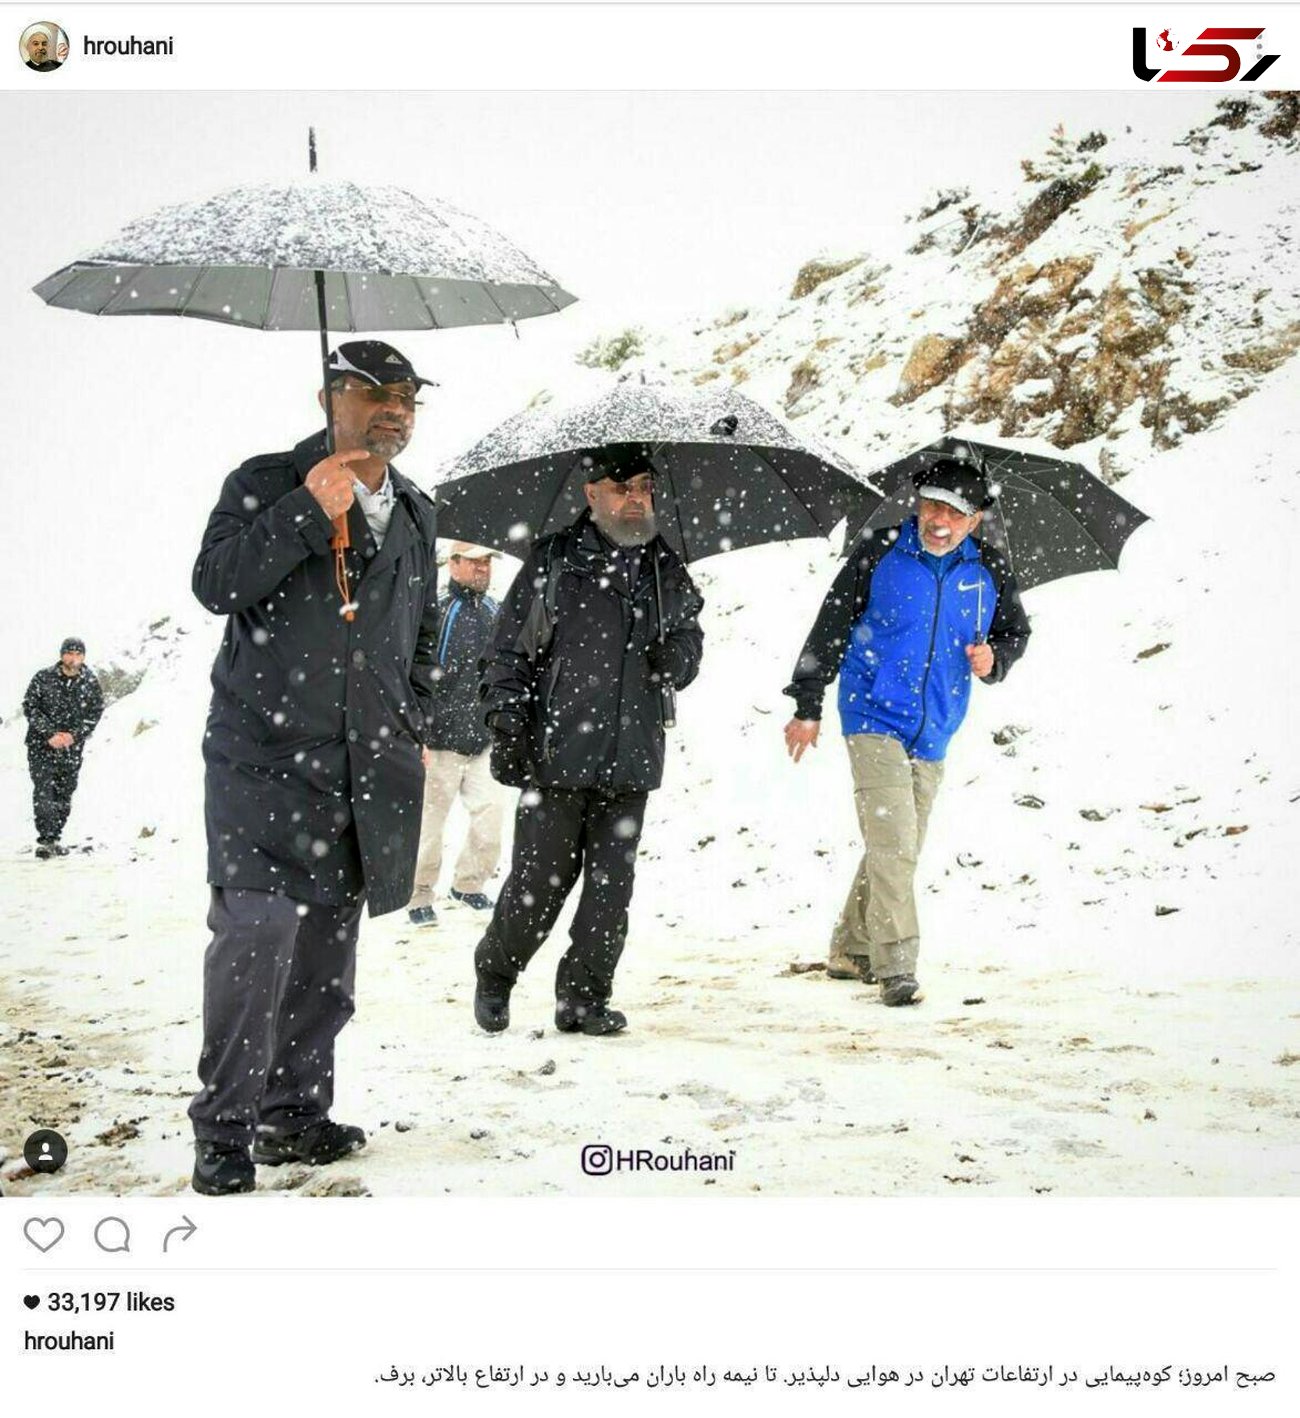 عکس یادگاری روحانی با جوانان در یک کوهپیمایی صبحگاهی زیر برف+عکس